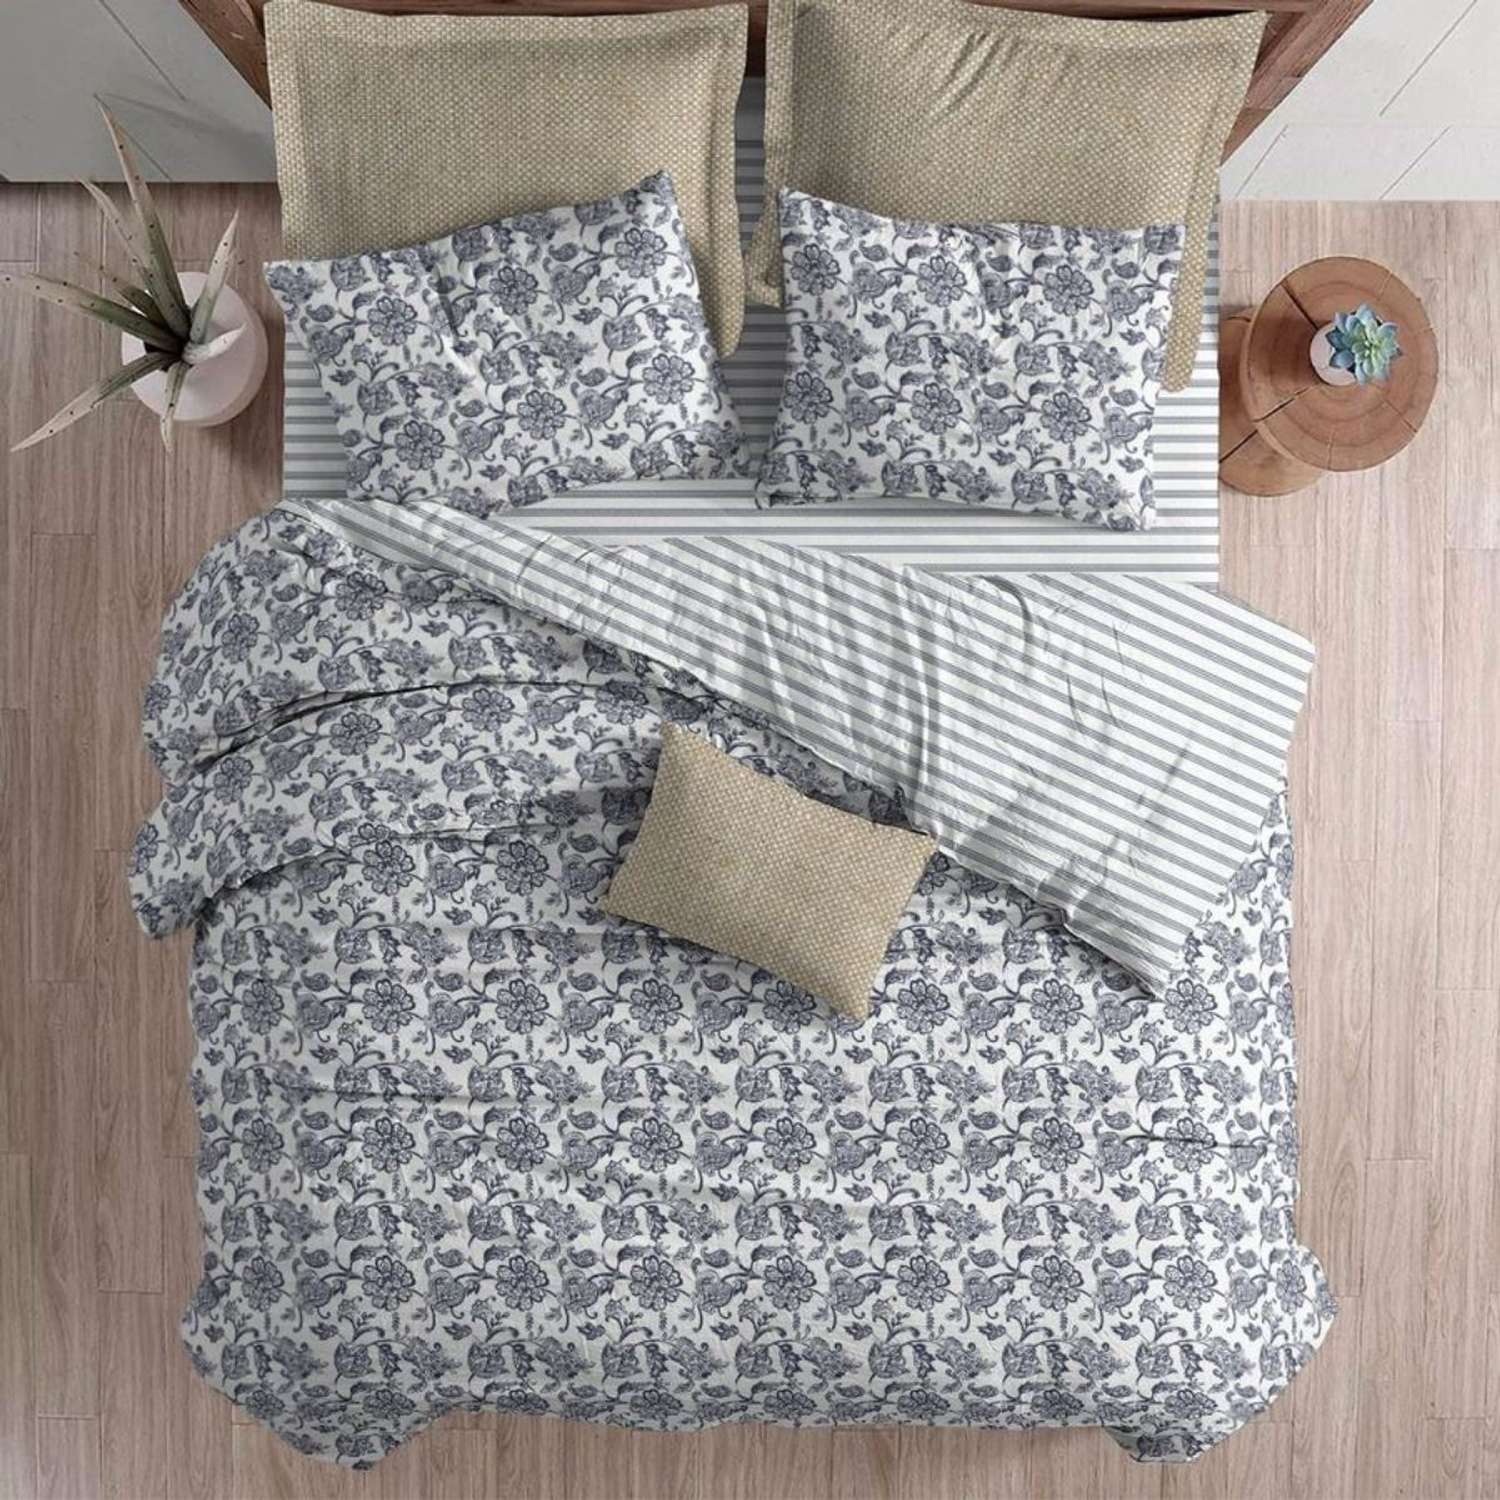 Комплект постельного белья lagom Эребру 2-спальный макси наволочки 70х70 - фото 9